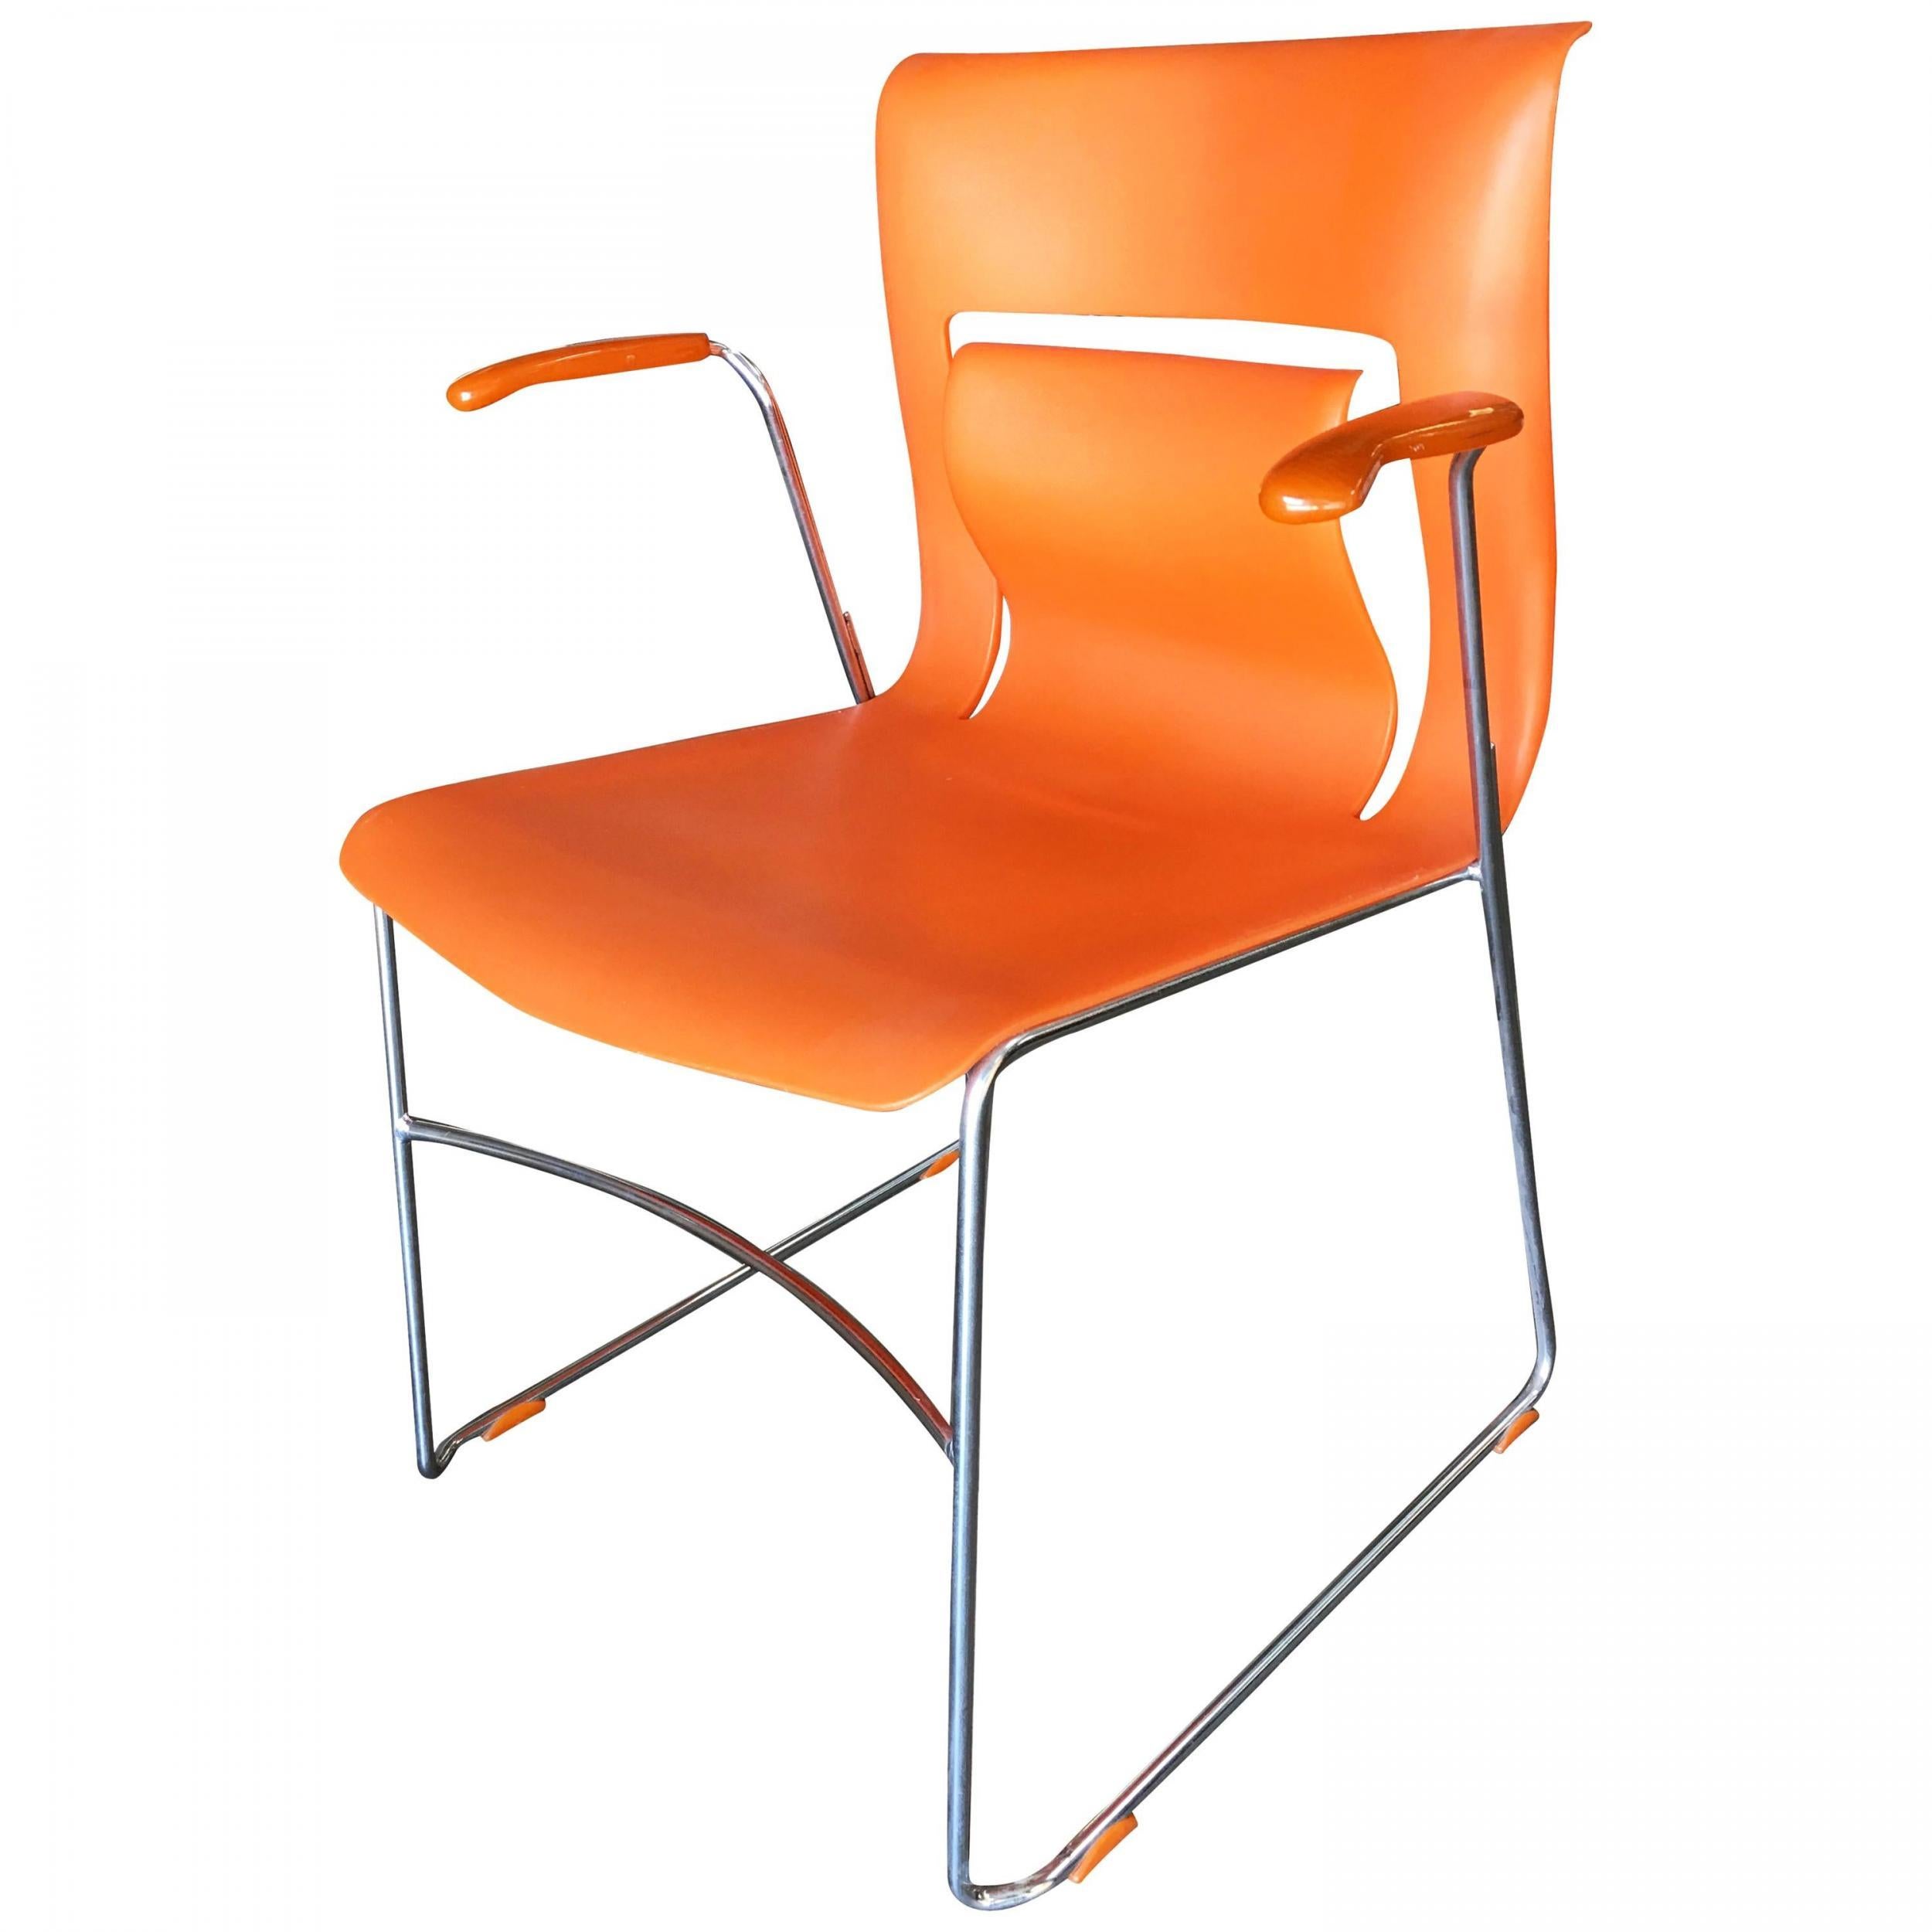 Dieser schlichte, aber elegante, moderne Sessel 